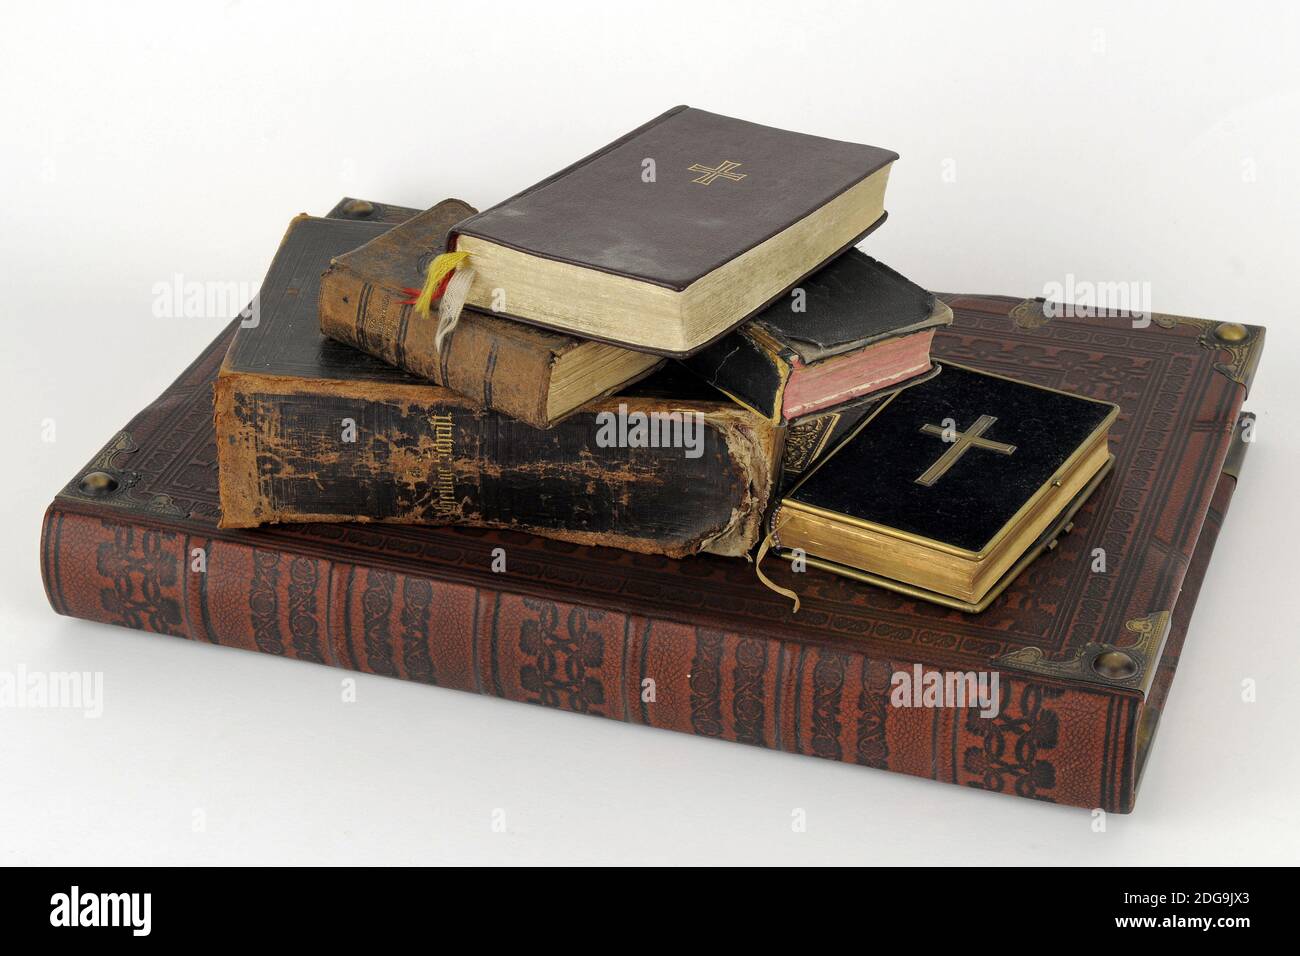 Alte Bibeln auf einen Haufen, alte Bücher, Stock Photo